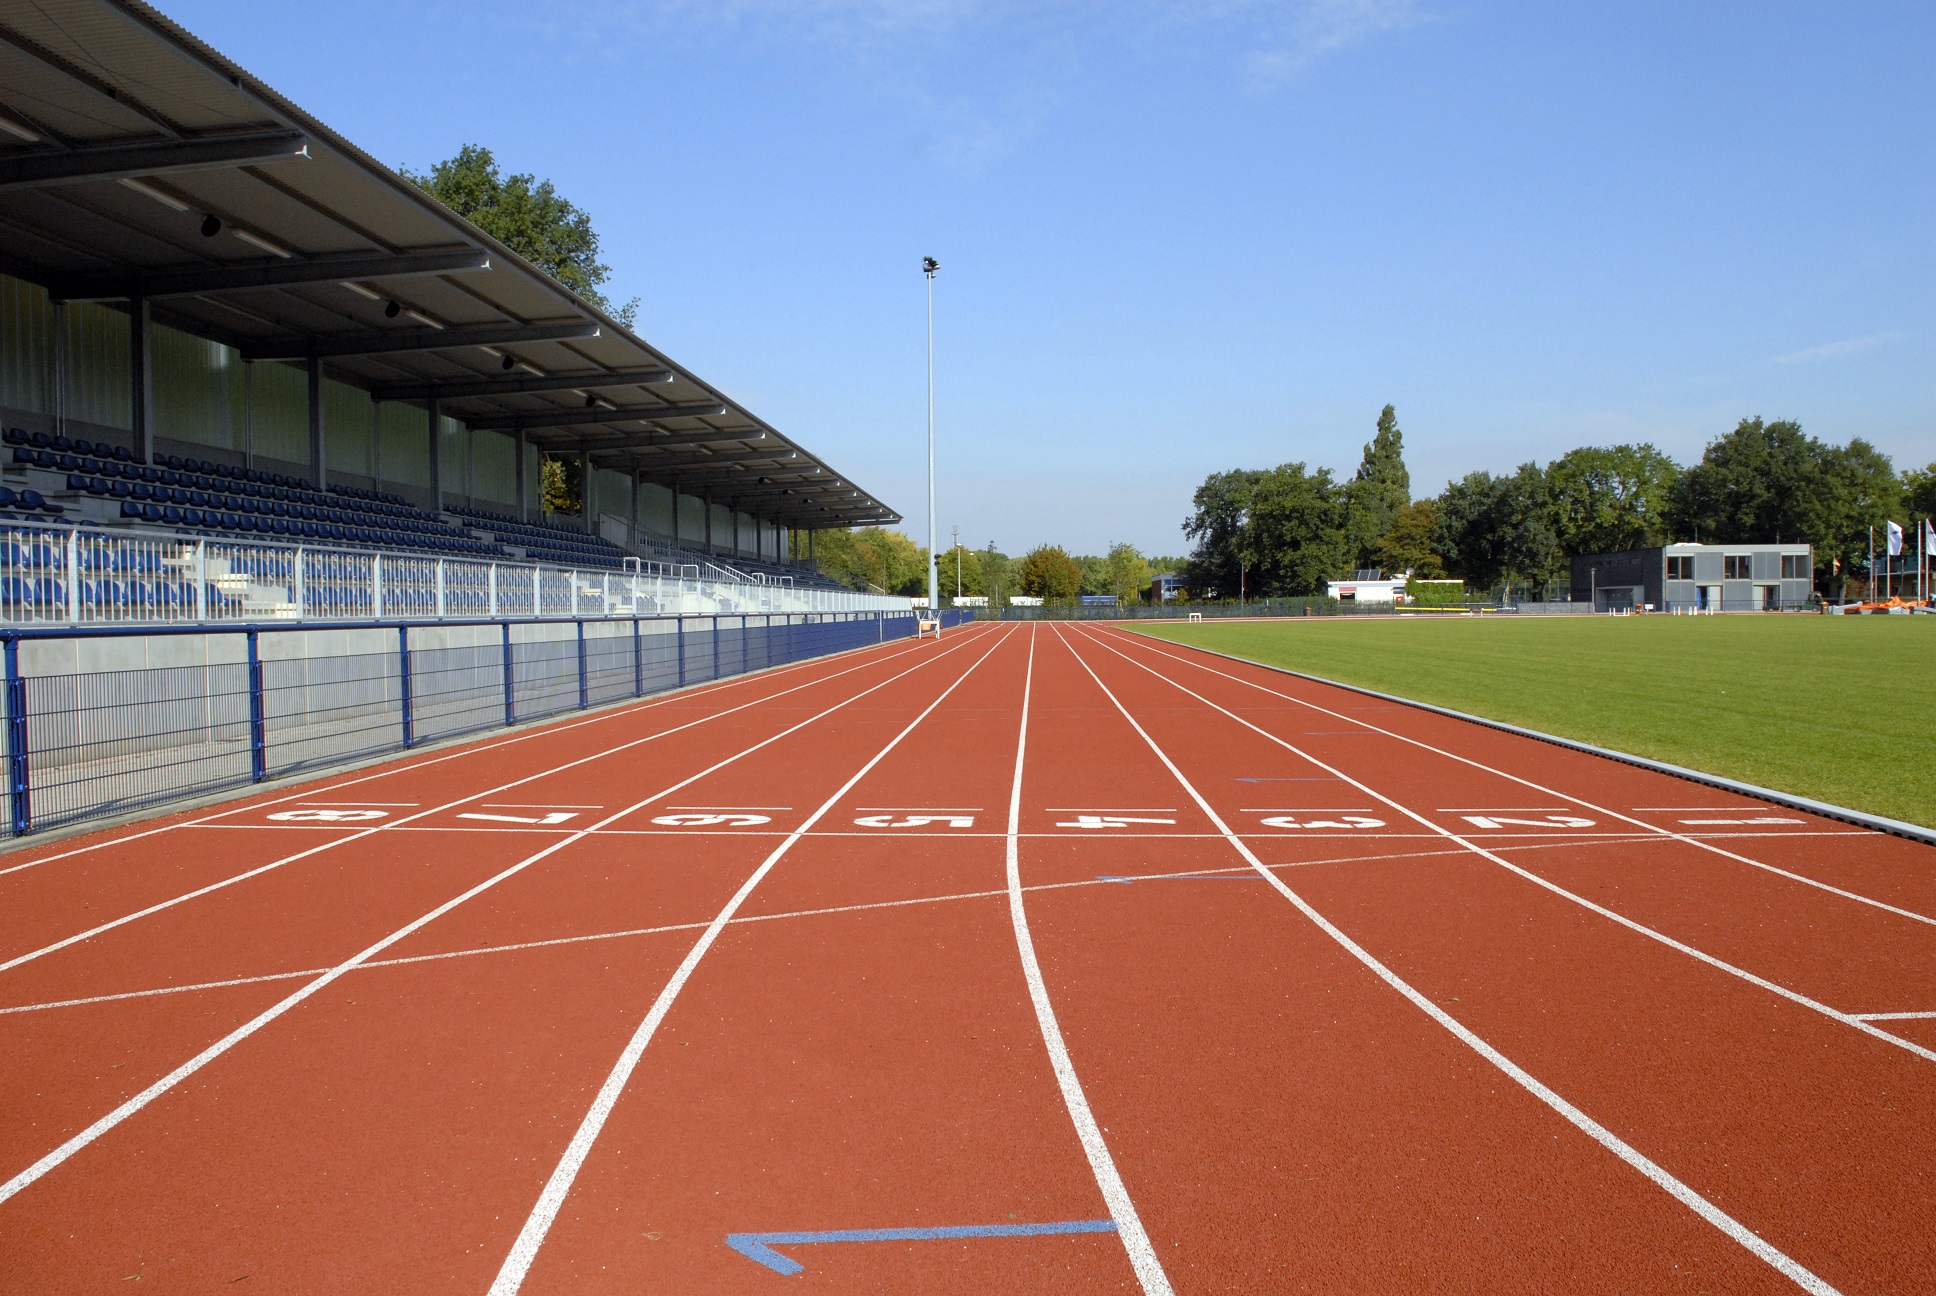 Sportanlagen im Freien können in Sachsen-Anhalt nach Freigabe durch den Träger unter Auflagen wieder genutzt werden.